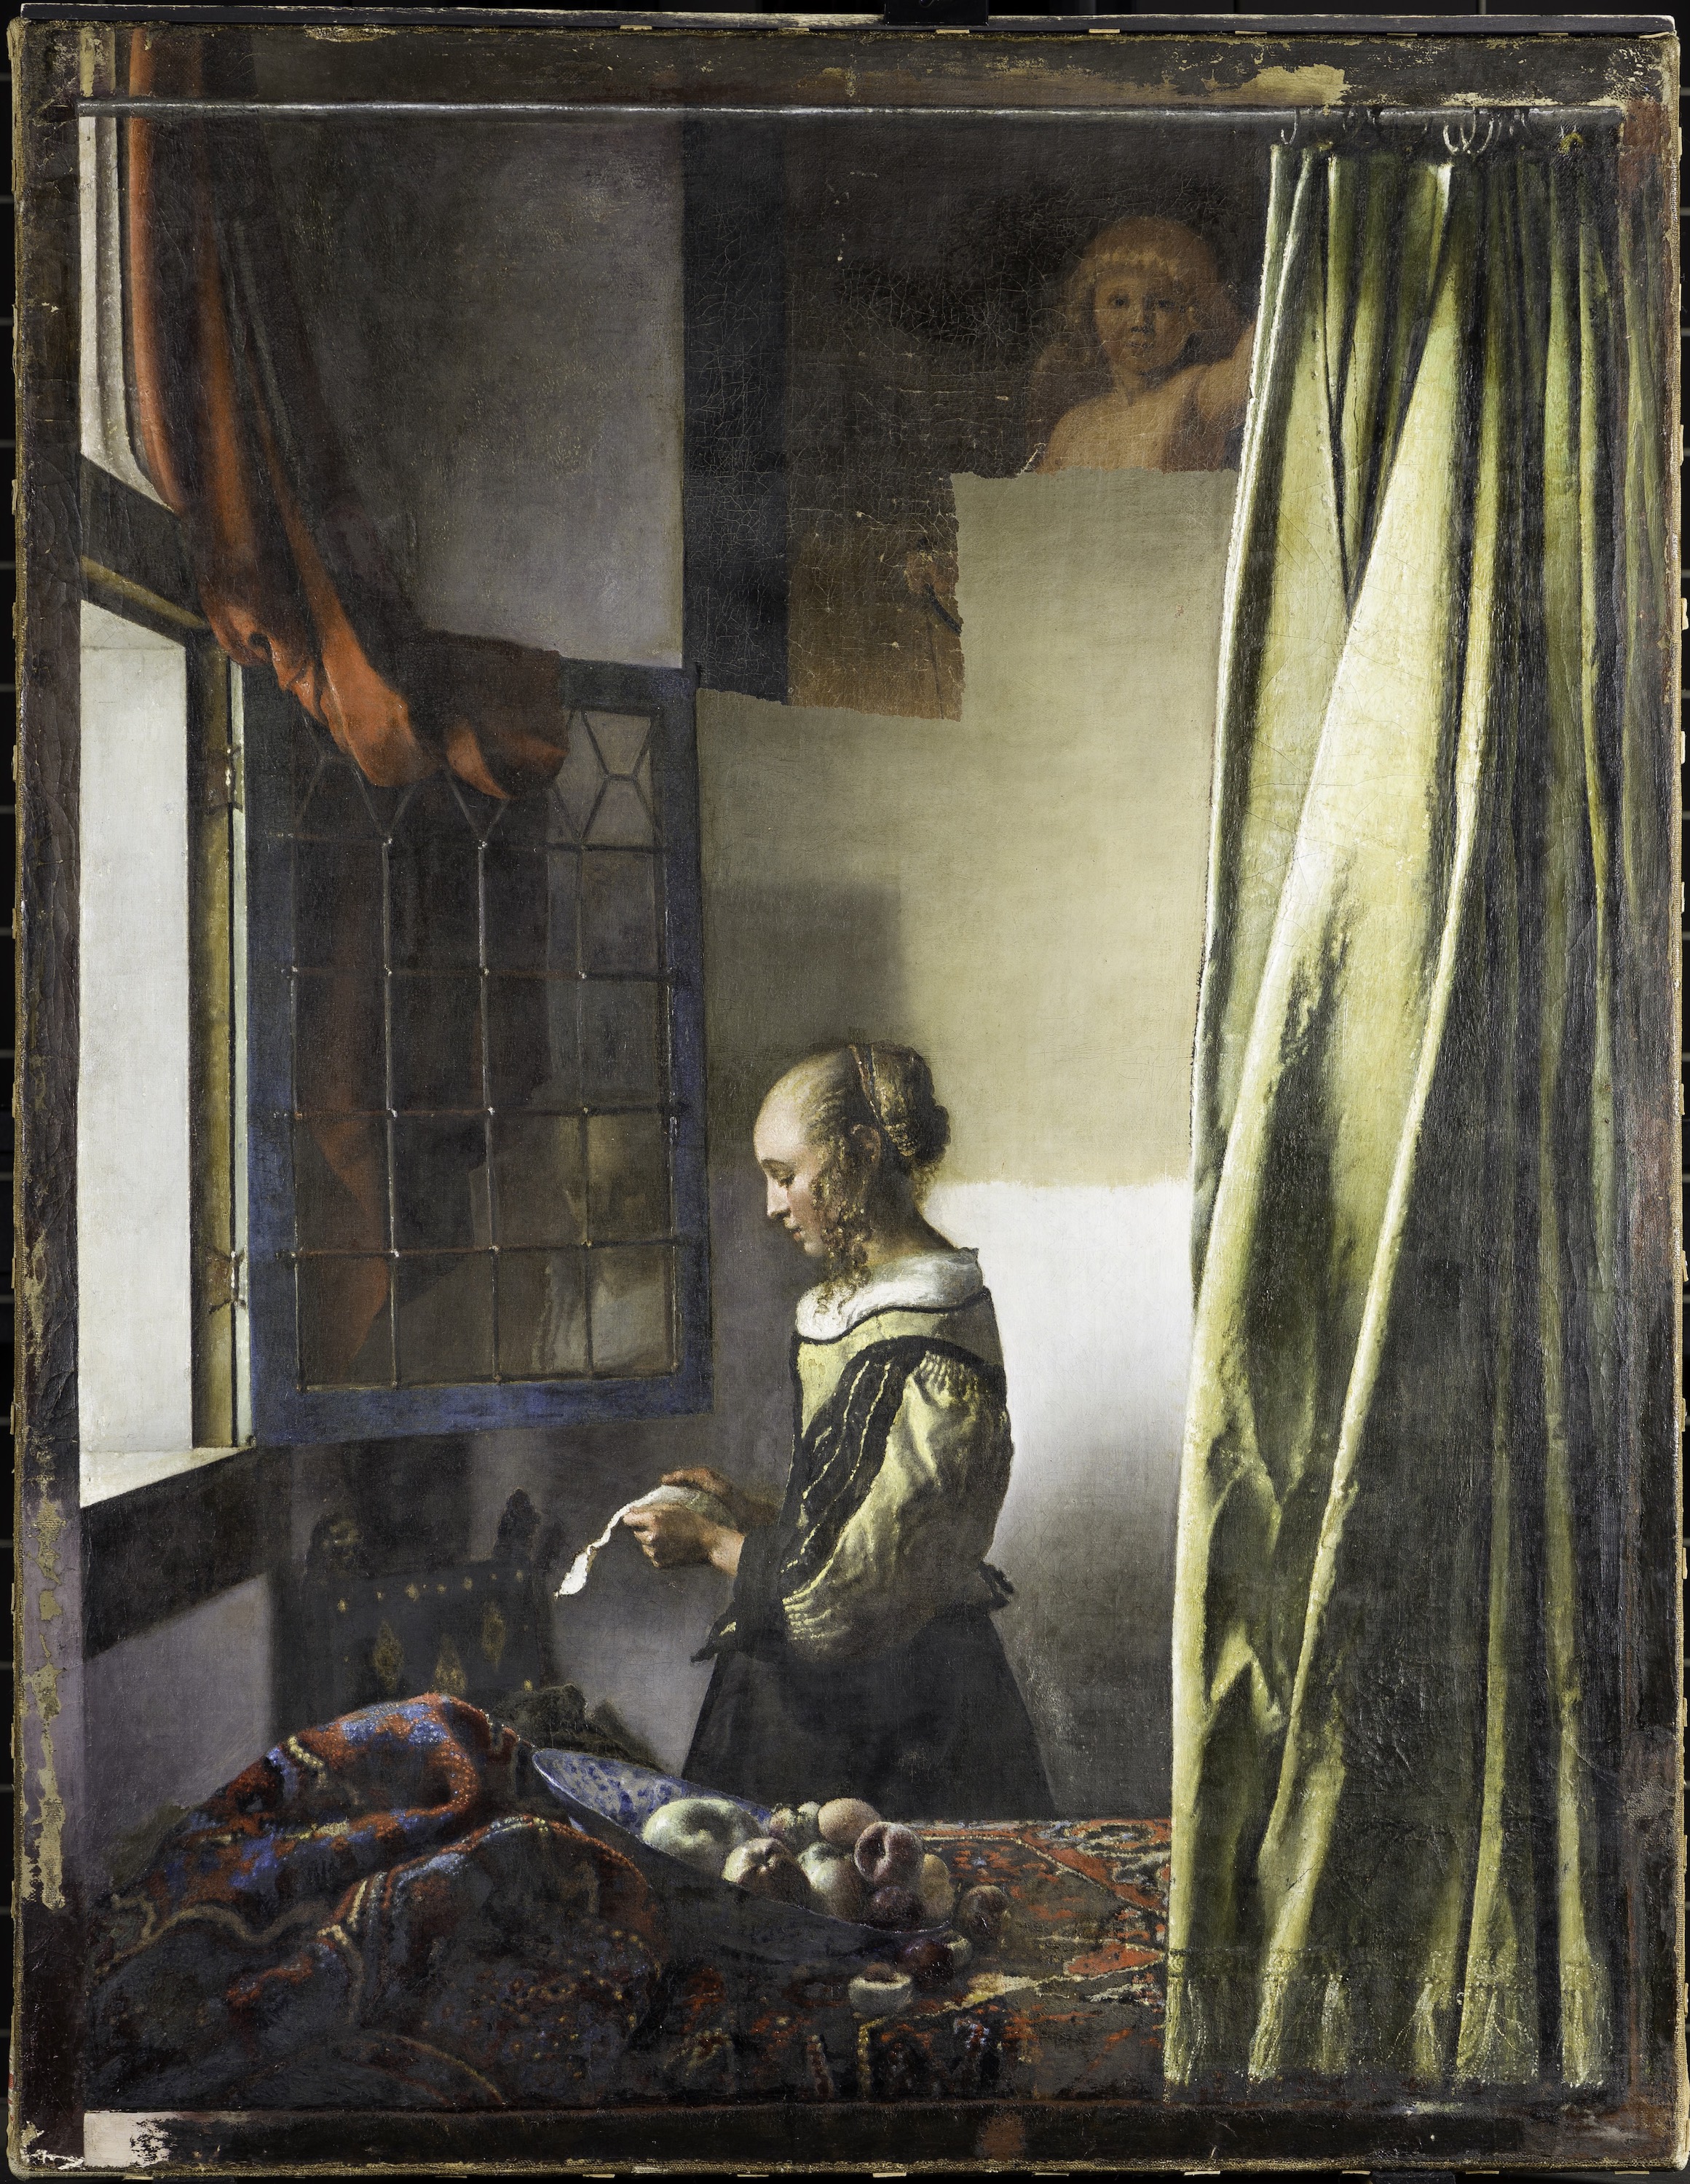 Levelet olvasó lány nyitott ablaknál by Johannes Vermeer - 1657/59 körül - 83 cm × 64.5 cm 